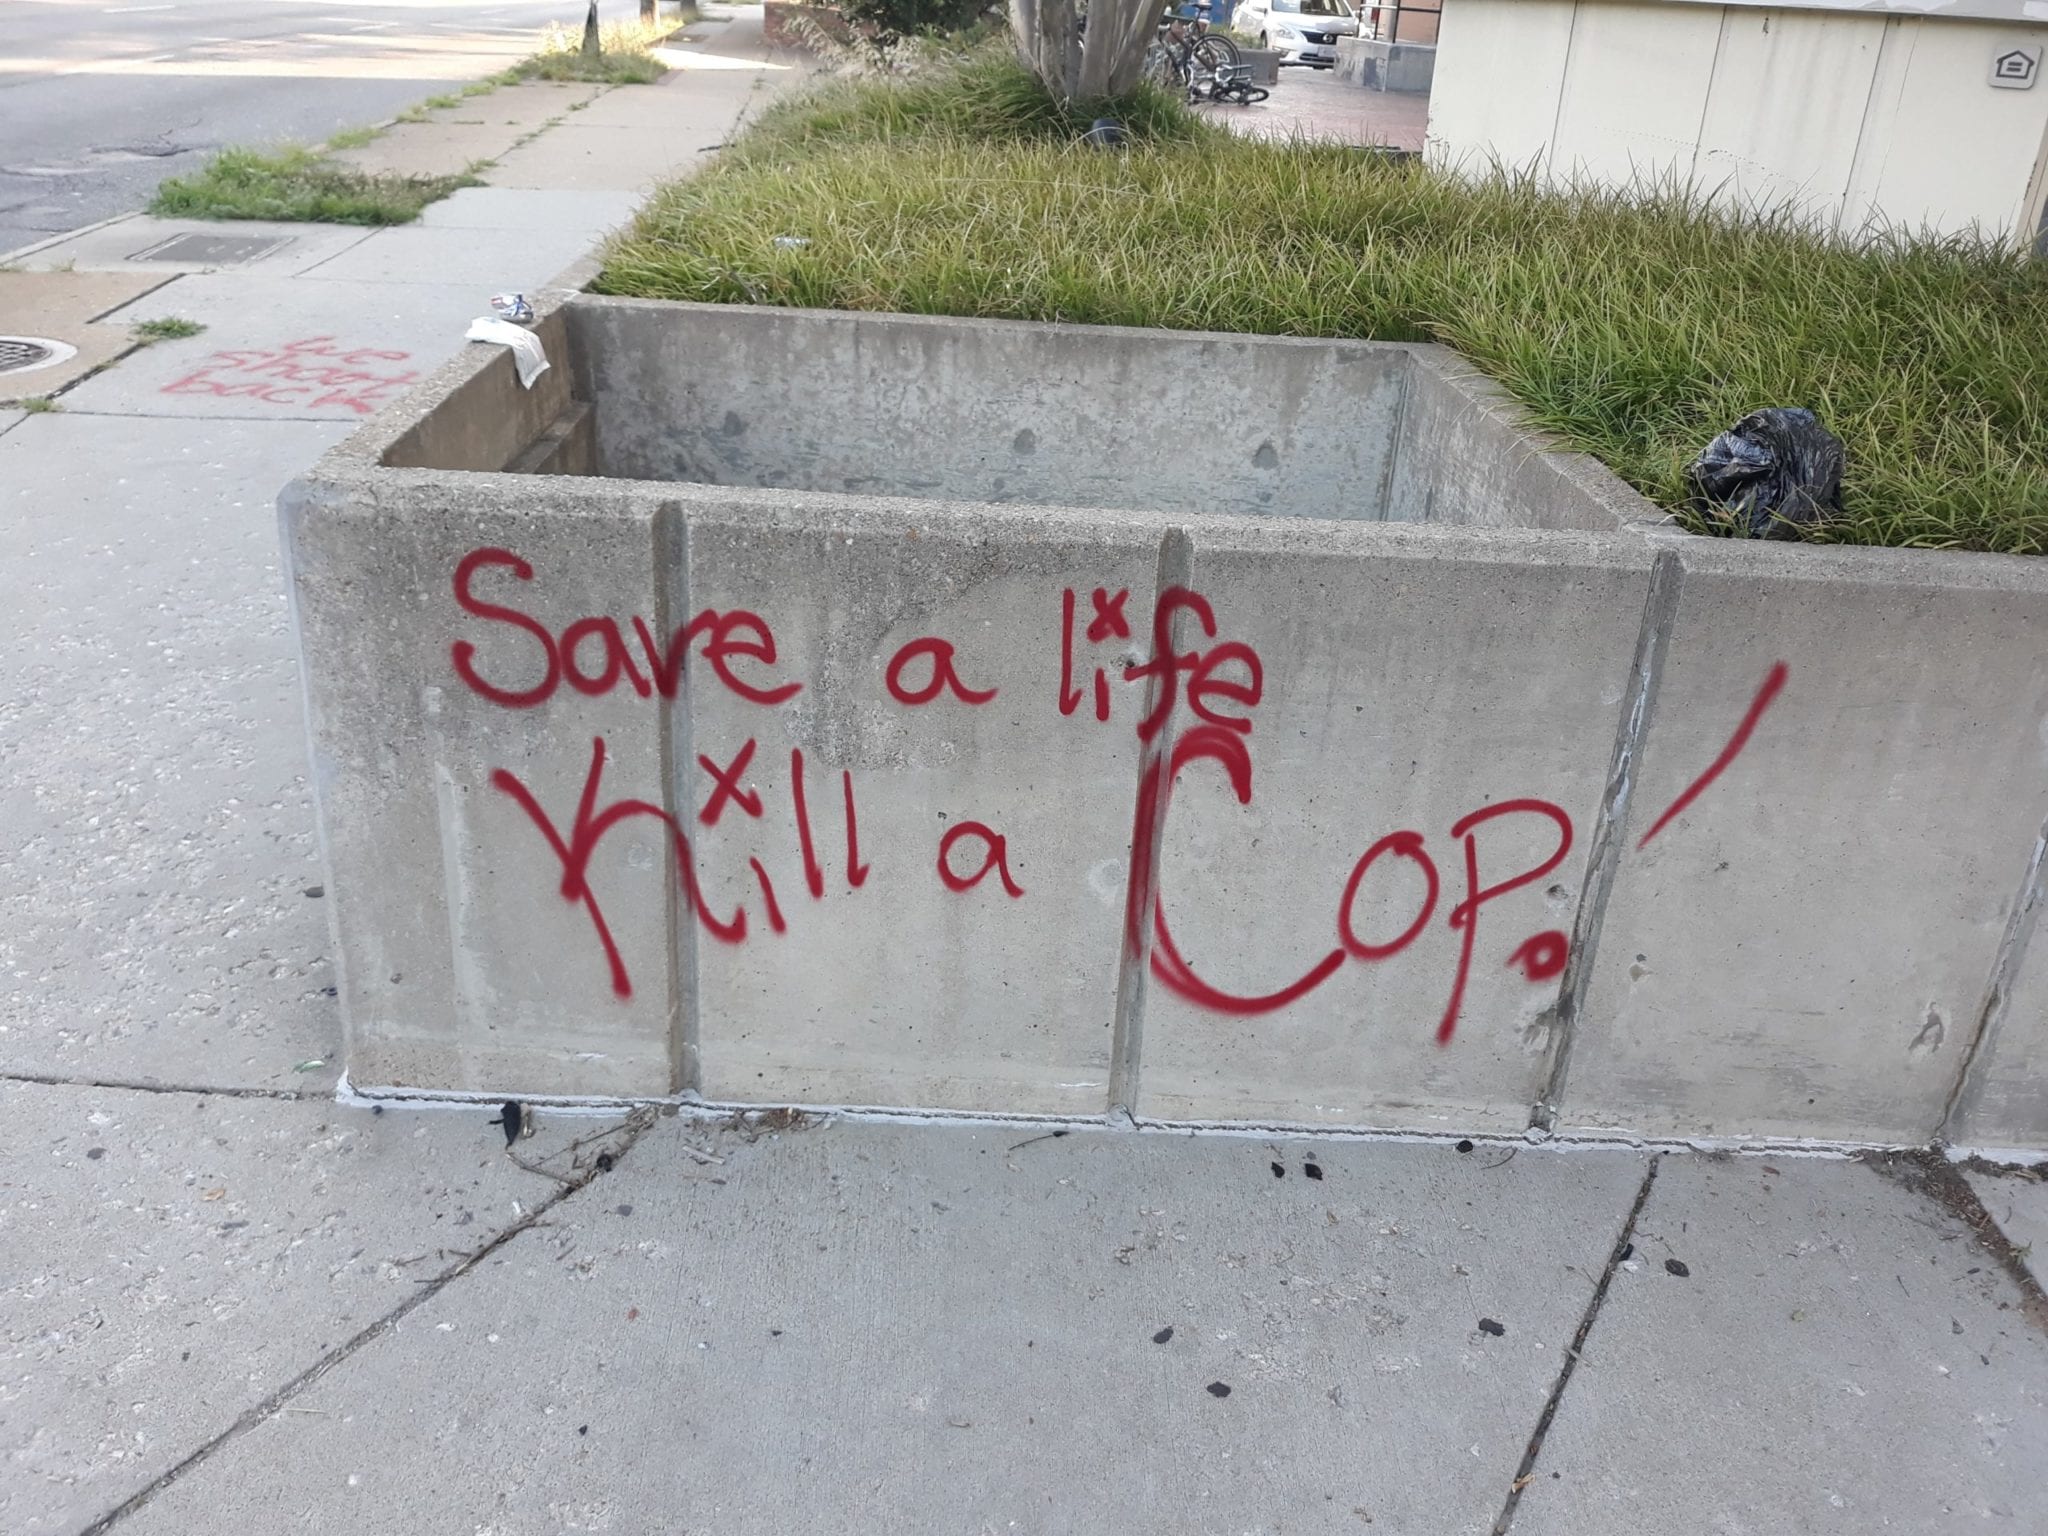 Kill a cop